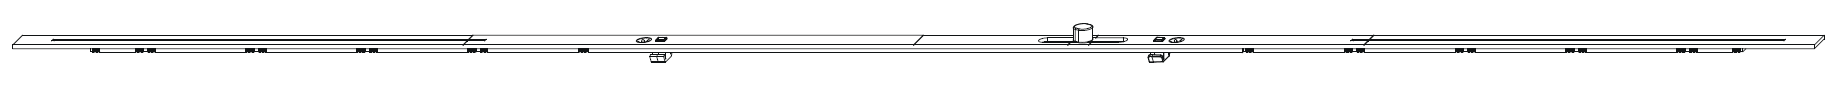 MAICO -  Prolunga BILICO bilico orizzontale per cremonese - dimensioni 2250 - hbb 1751 - 2250 - lbb 1751 - 2250